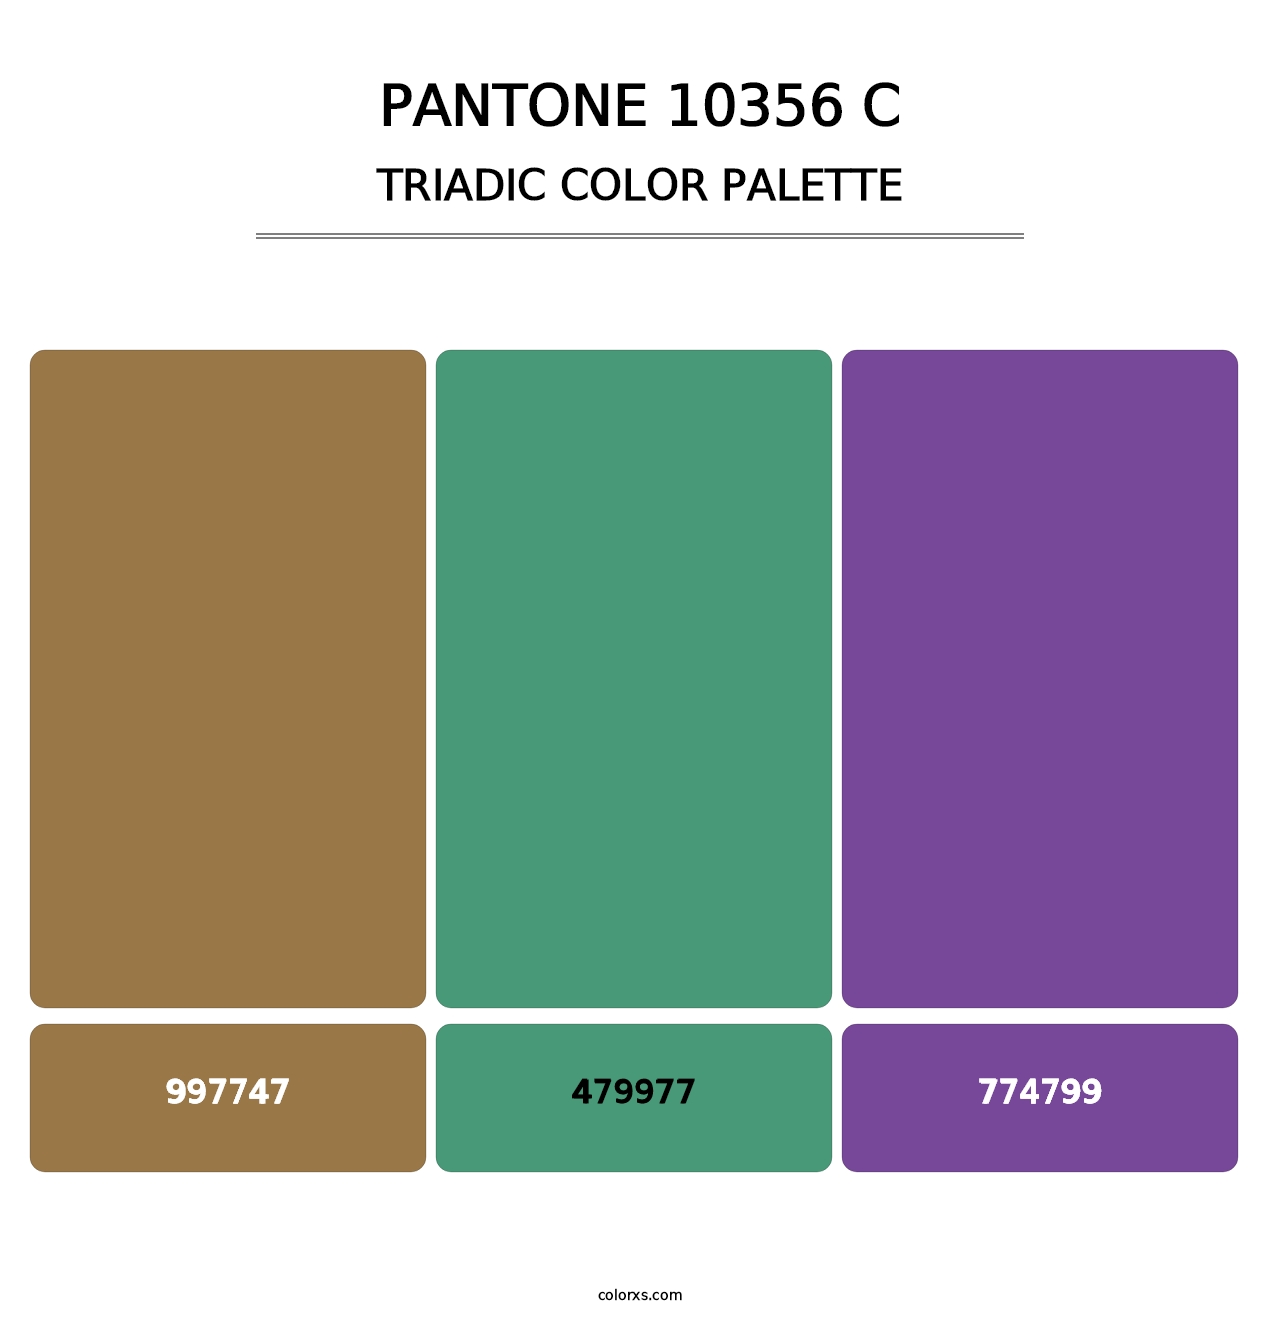 PANTONE 10356 C - Triadic Color Palette